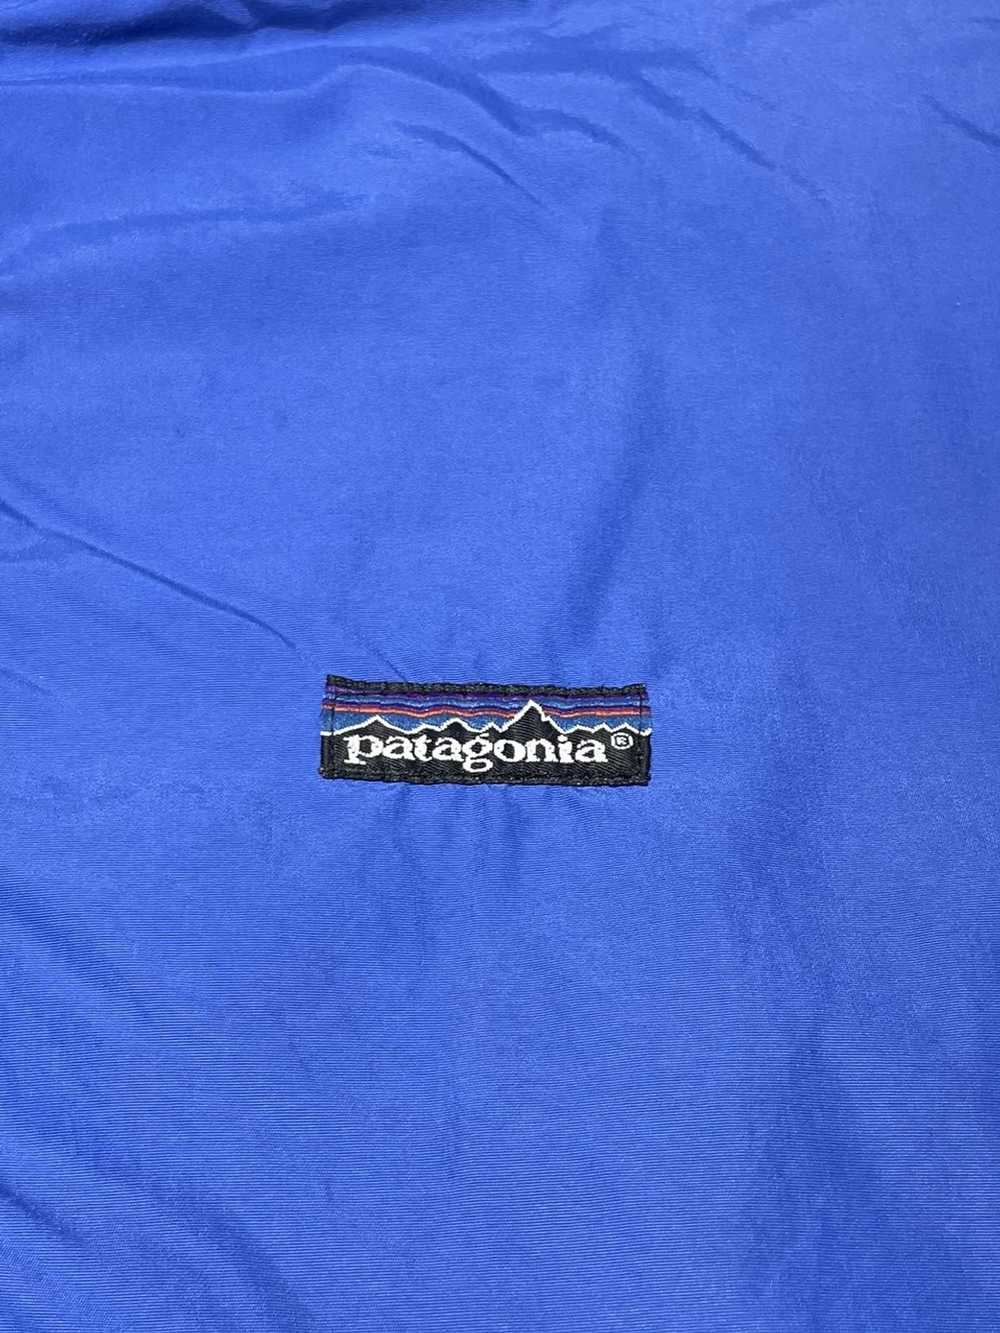 Patagonia 98’ Patagonia blue nylon teal fleece li… - image 6